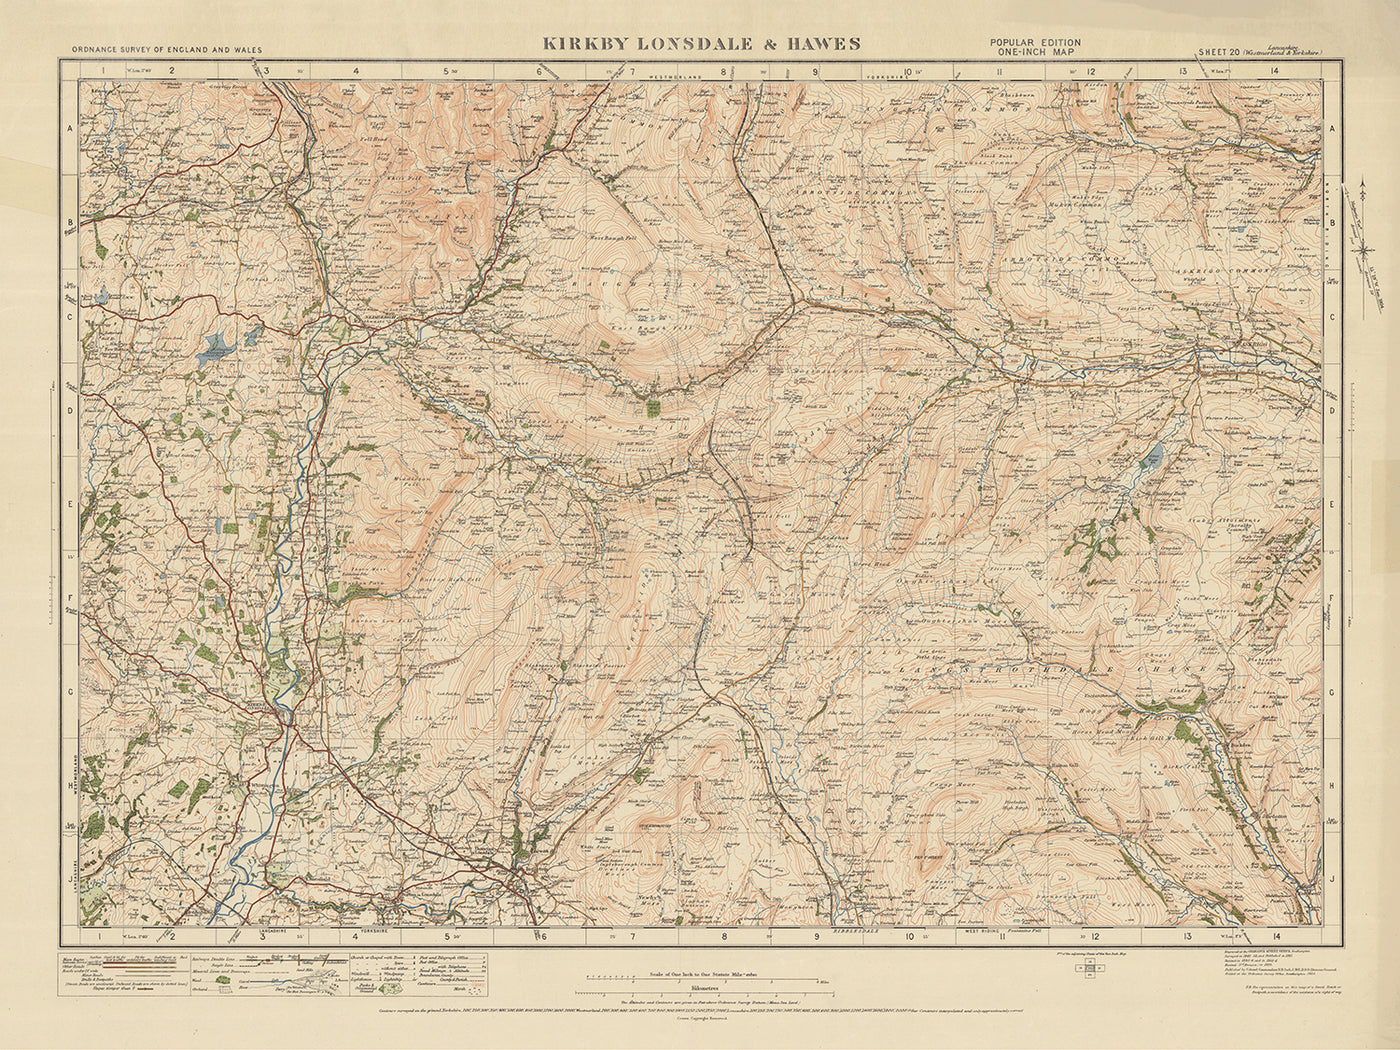 Ancienne carte de l'Ordnance Survey, feuille 20 - Kirkby Lonsdale & Hawes, 1925 : Ingleton, Sedbergh, Askrigg, Parc national des Yorkshire Dales